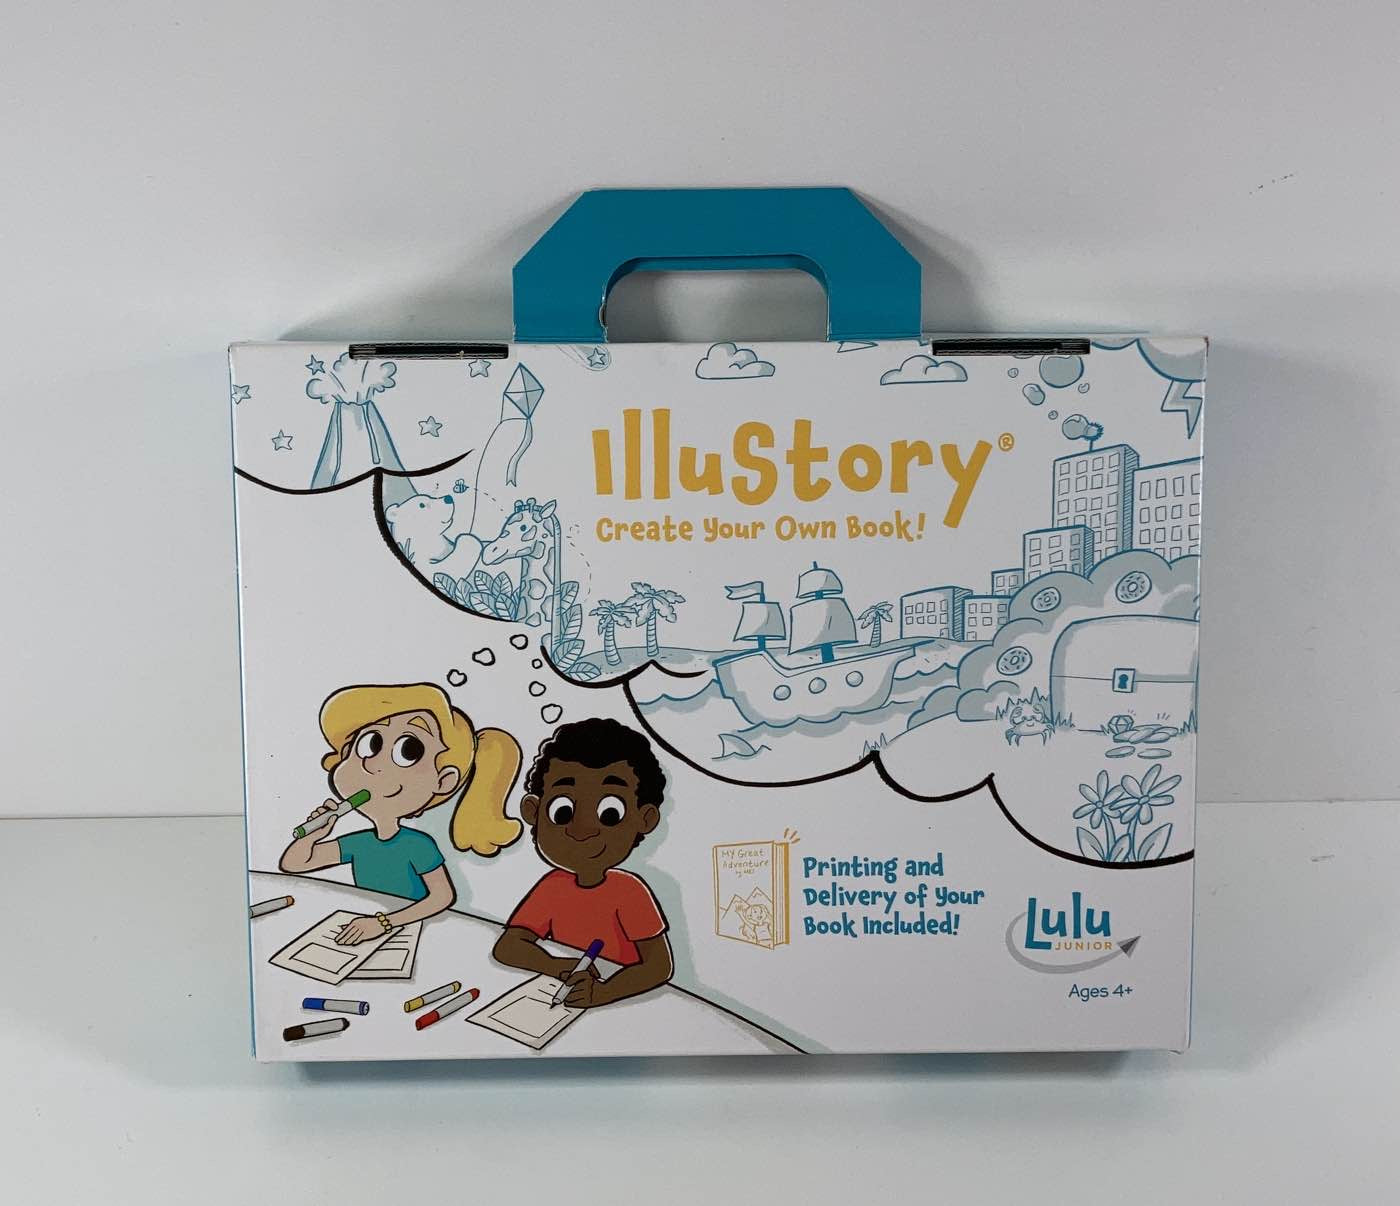 Lulu Jr. Illustory Book Making Kit, Multicolor Opened, Complete, Not Used